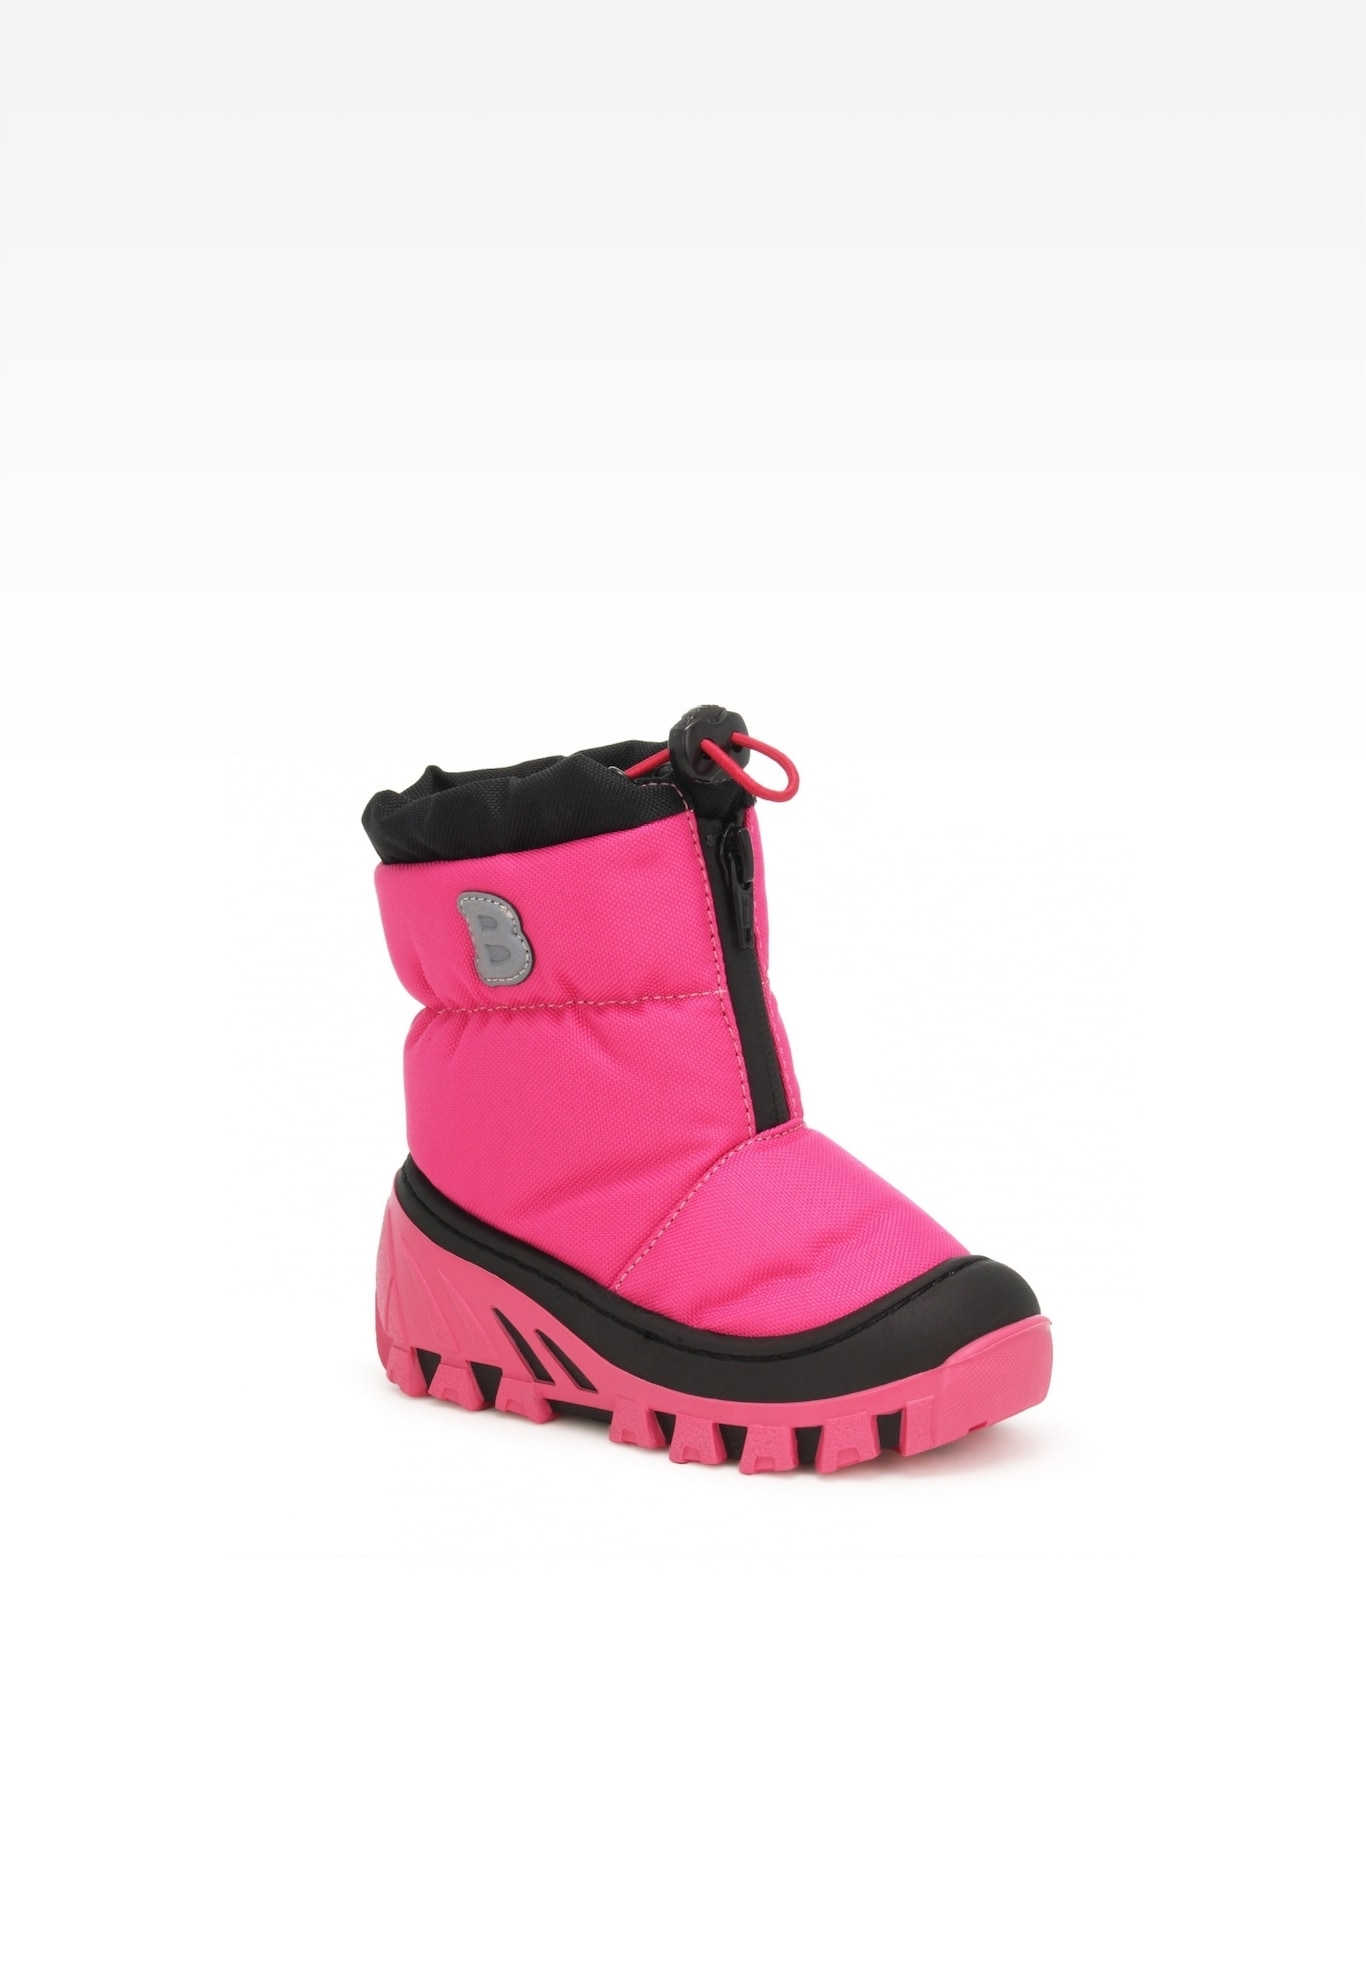 Śniegowce BARTEK 14624003, dla dziewcząt, różowo-czarny